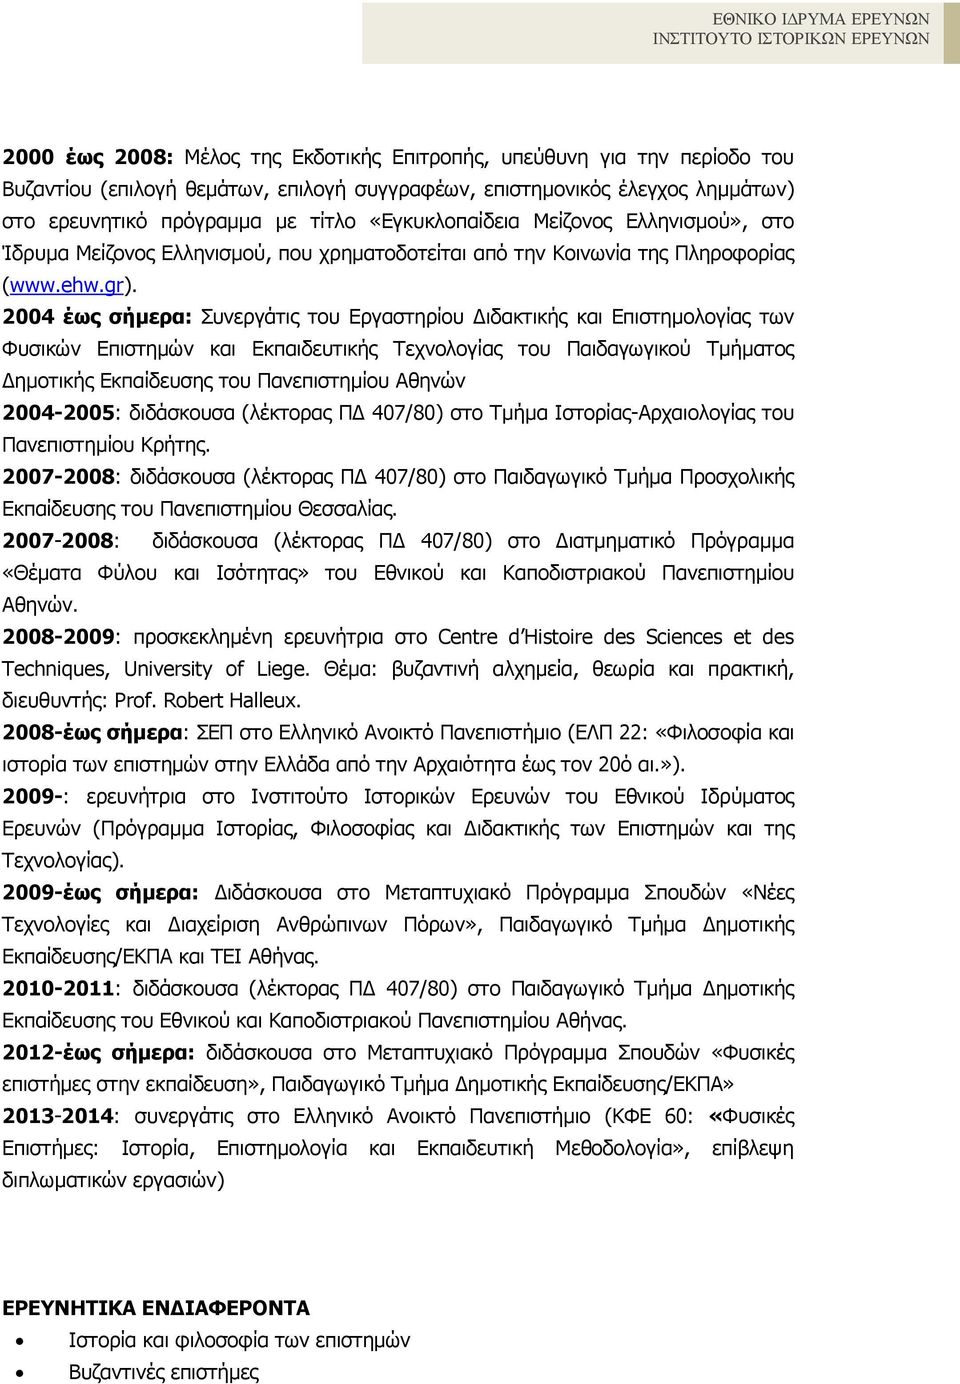 2004 έως σήµερα: Συνεργάτις του Εργαστηρίου ιδακτικής και Επιστηµολογίας των Φυσικών Επιστηµών και Εκπαιδευτικής Τεχνολογίας του Παιδαγωγικού Τµήµατος ηµοτικής Εκπαίδευσης του Πανεπιστηµίου Αθηνών